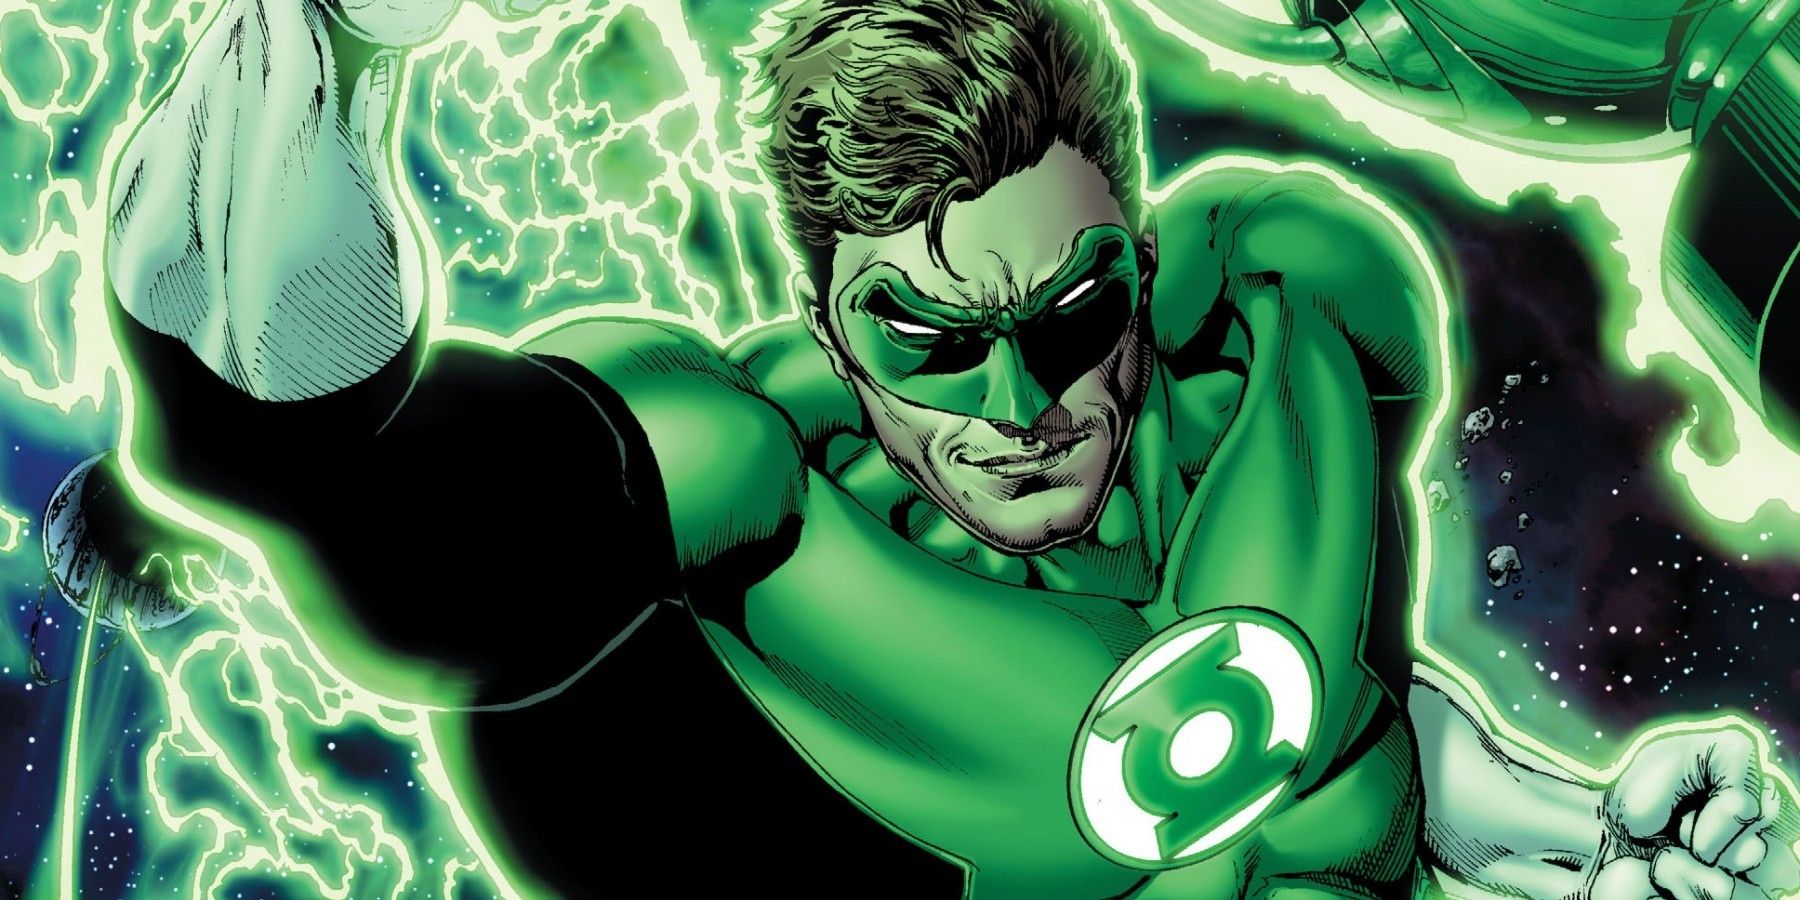 La herencia judía de Green Lantern debería ser más prominente en DC Comics